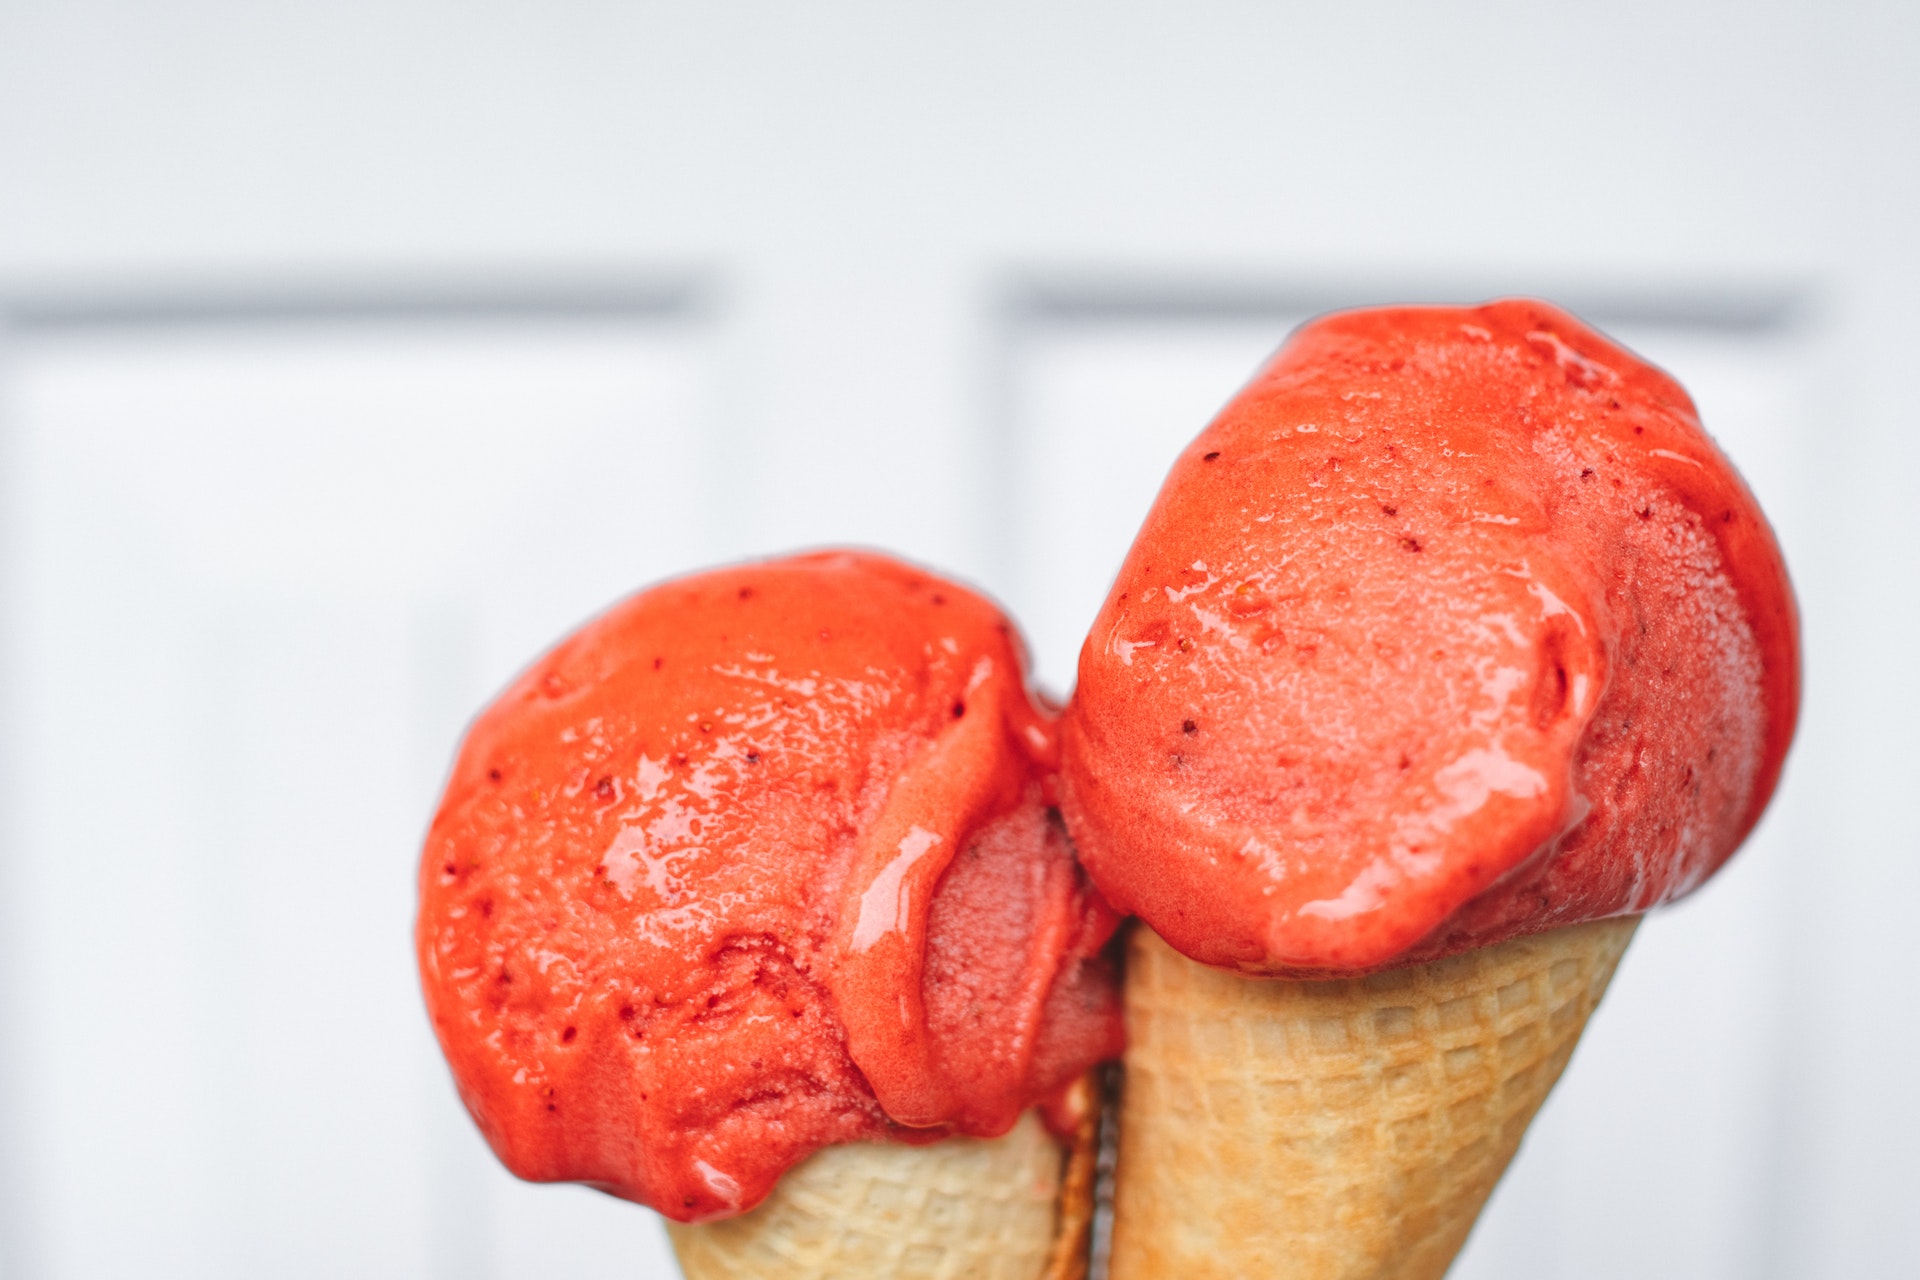 sobremesa: sorvete caseiro de morango com a fruta